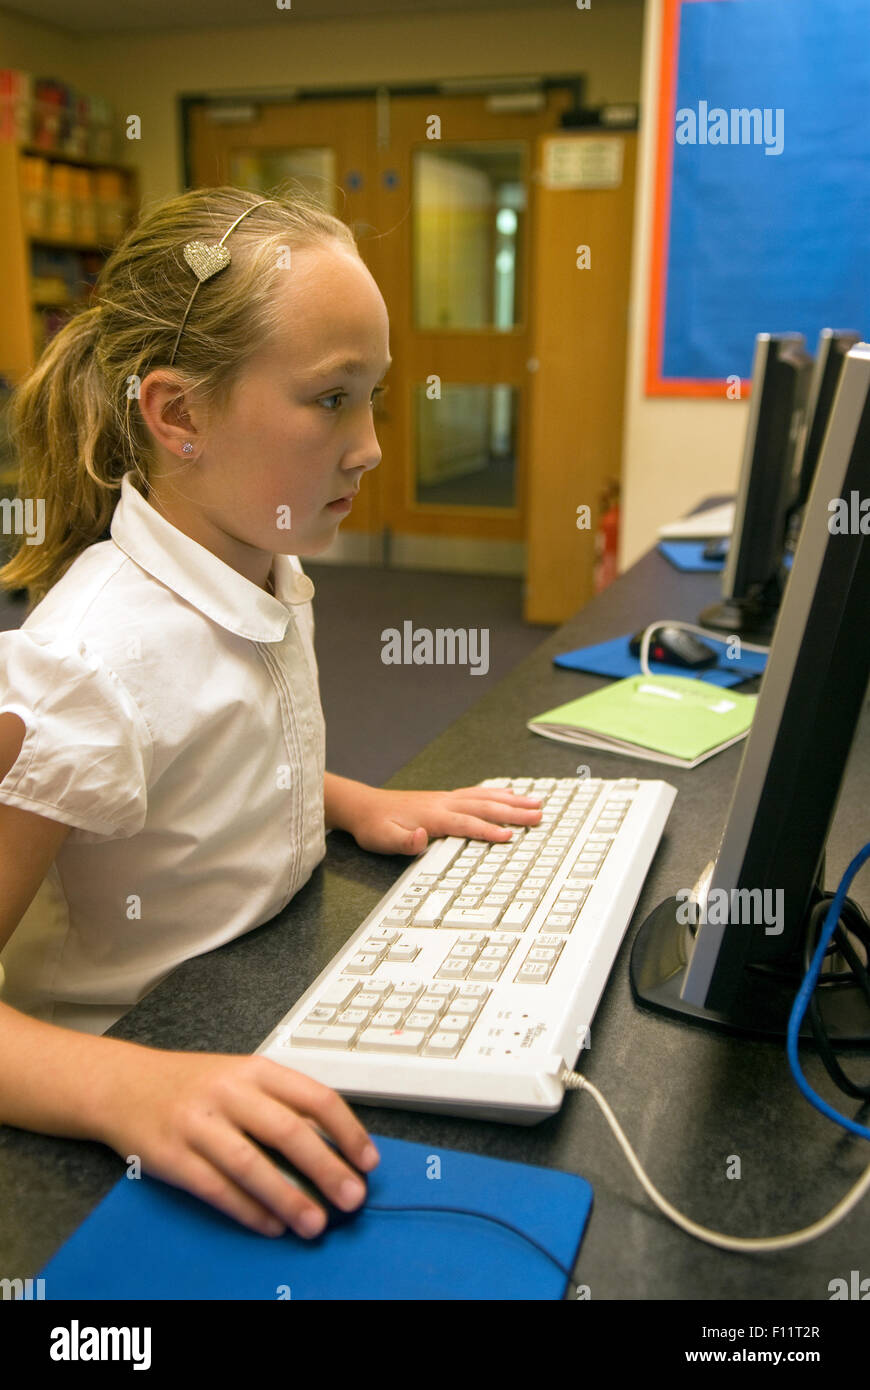 Primary school pupil using computer in school, Midlands, UK. Stock Photo